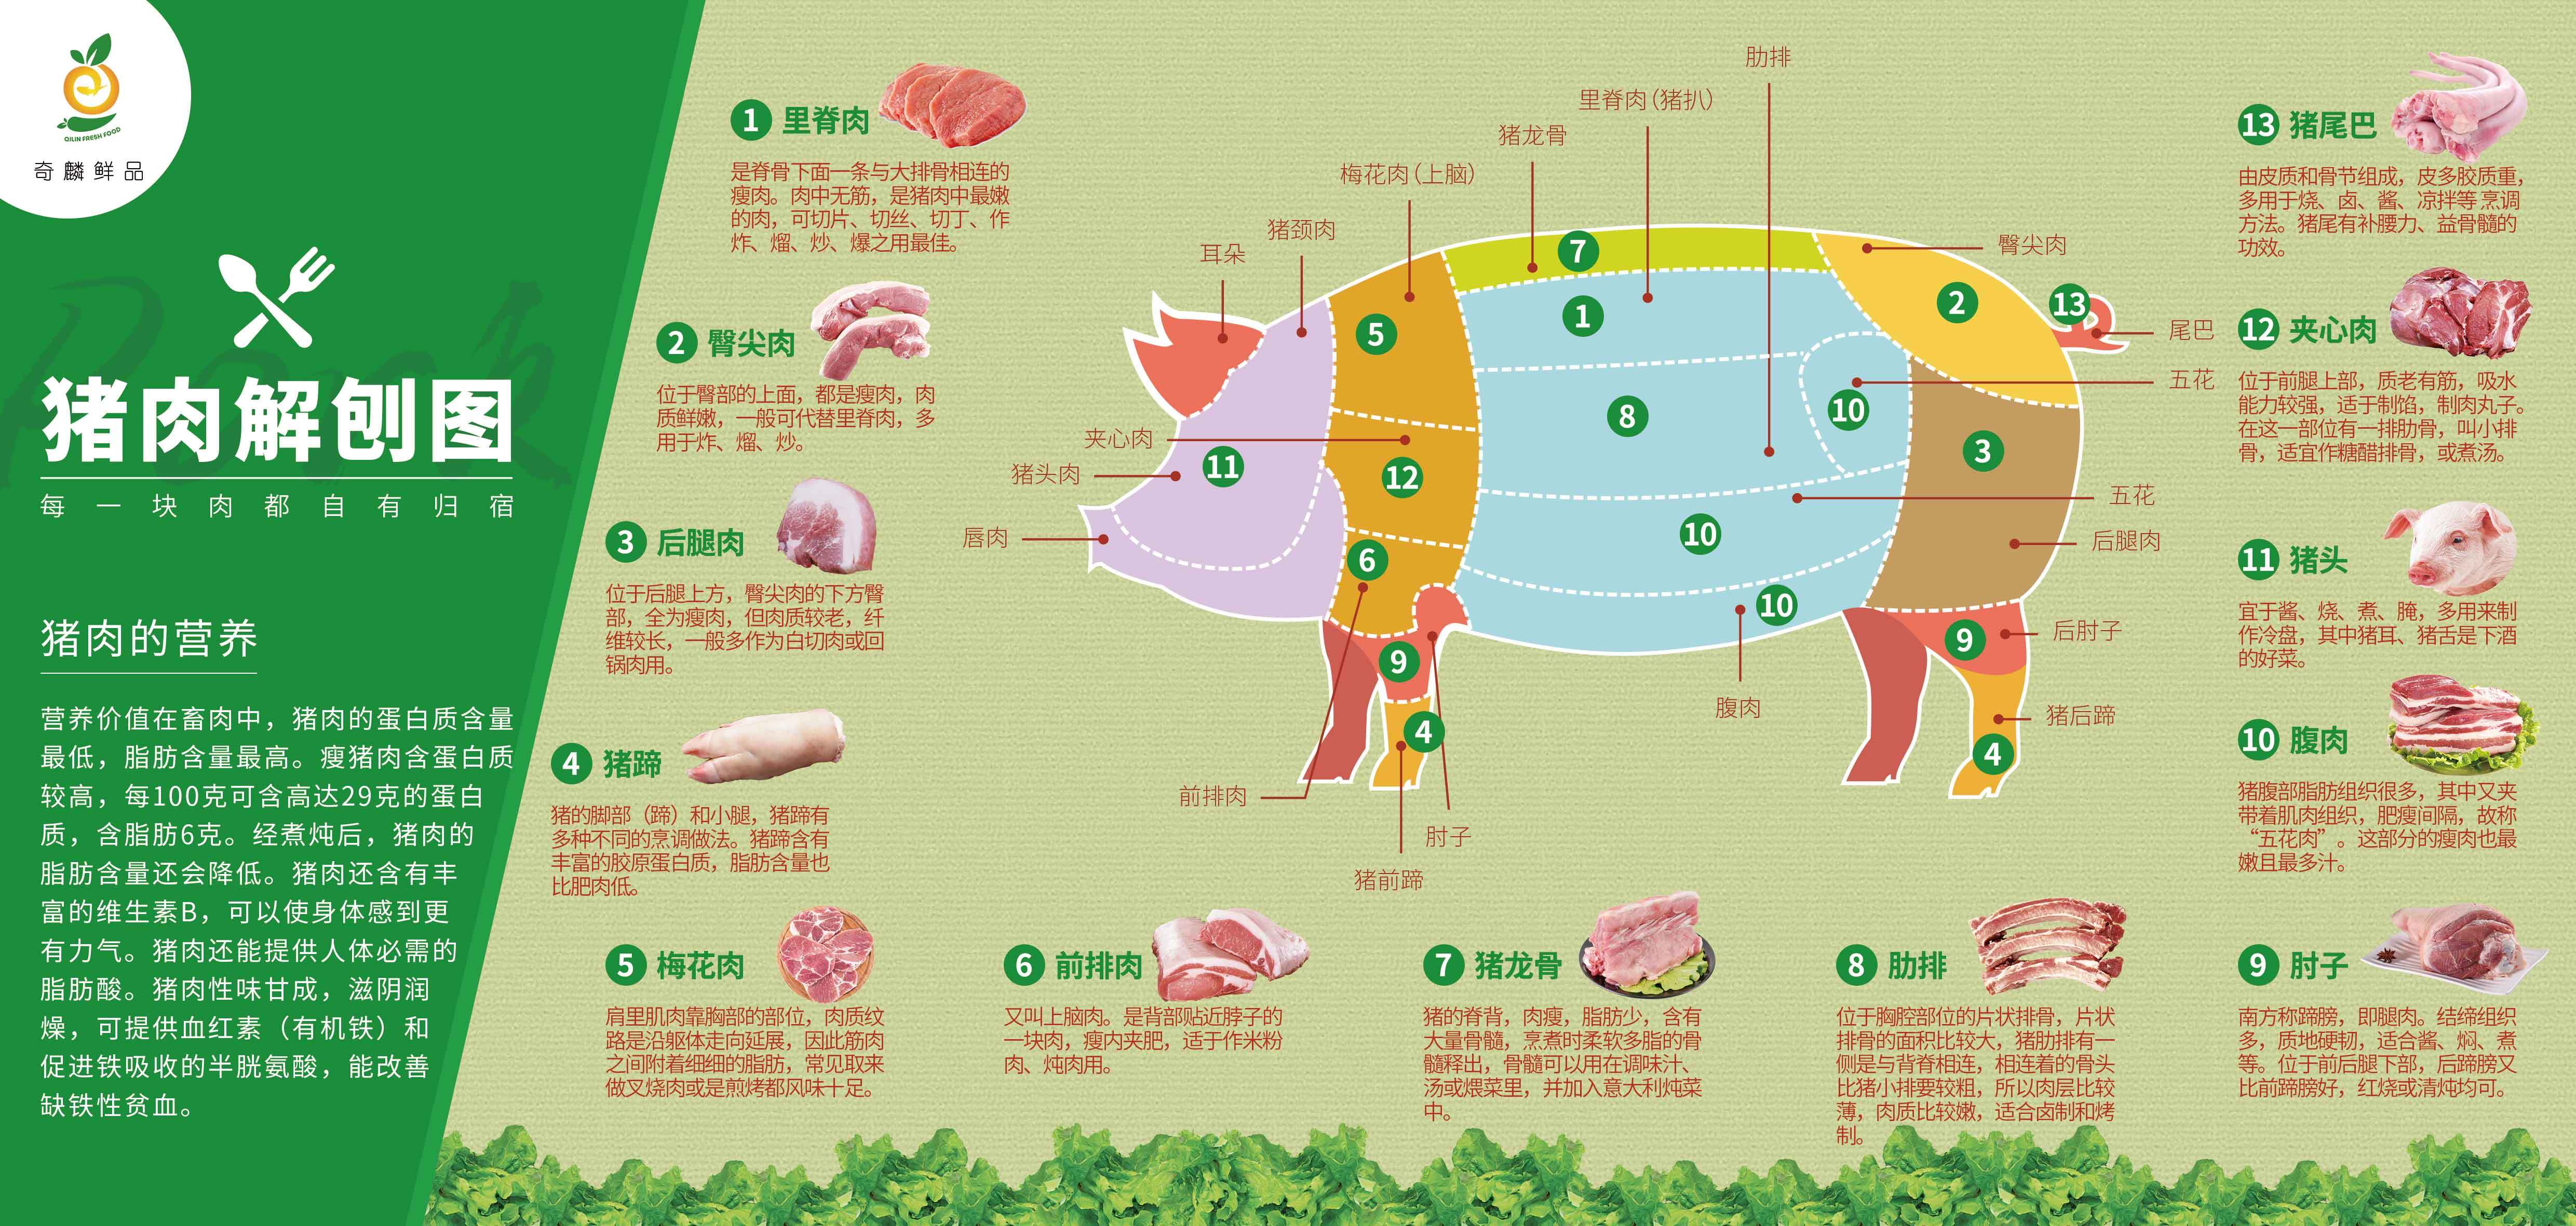 每天都要吃猪肉,猪肉可绝非你想象的那般简单!